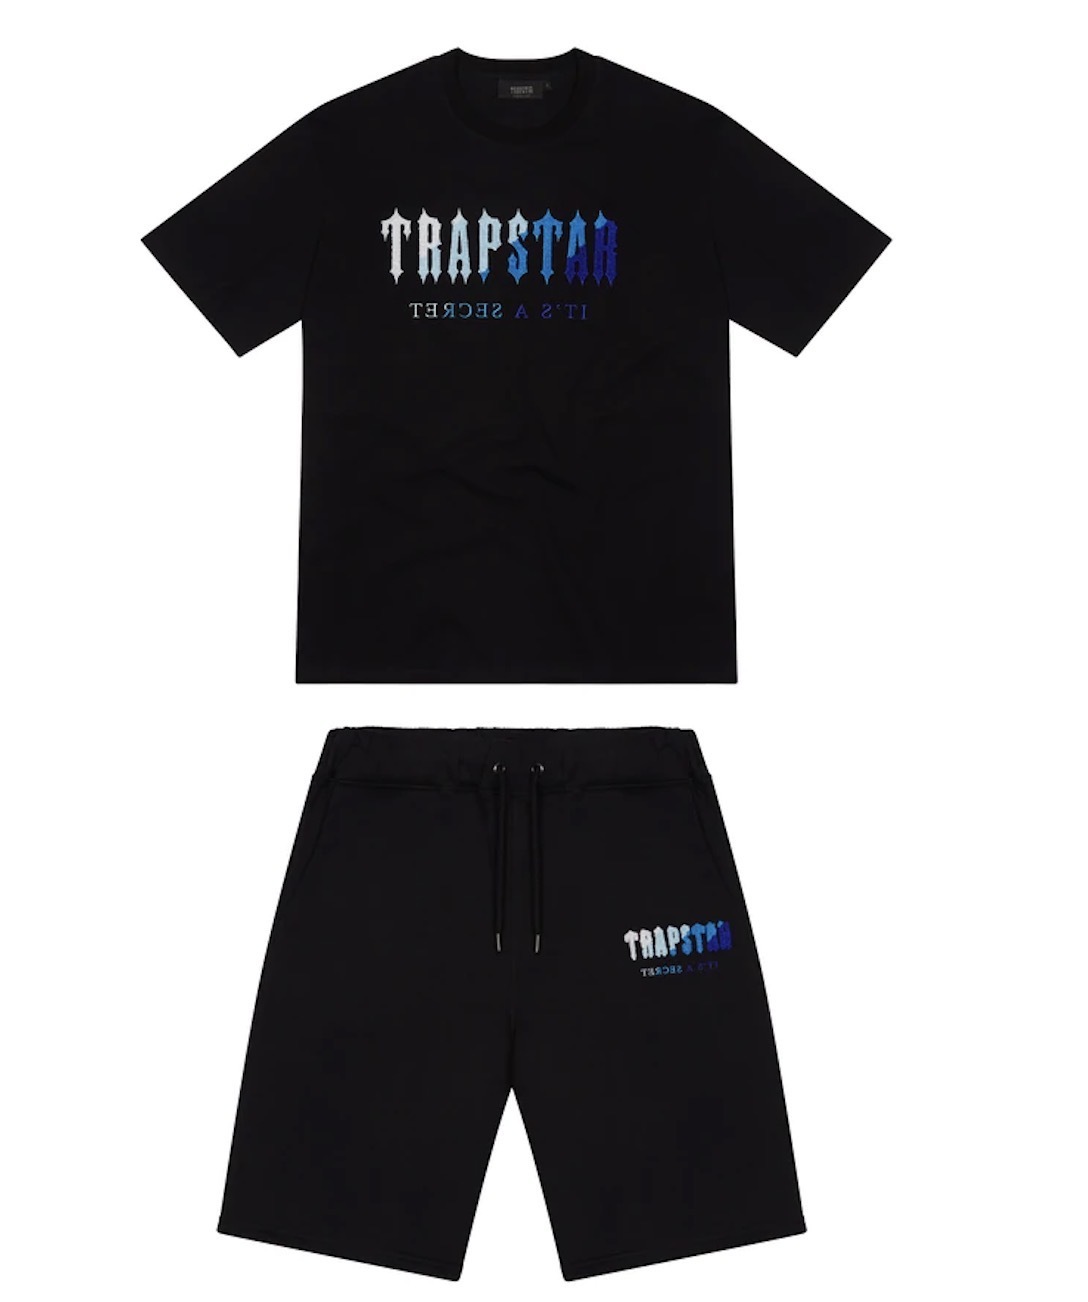 Hommes Trapstar t-shirt à manches courtes imprimé tenue Chenille survêtement noir coton Londres Streetwear S-2XL